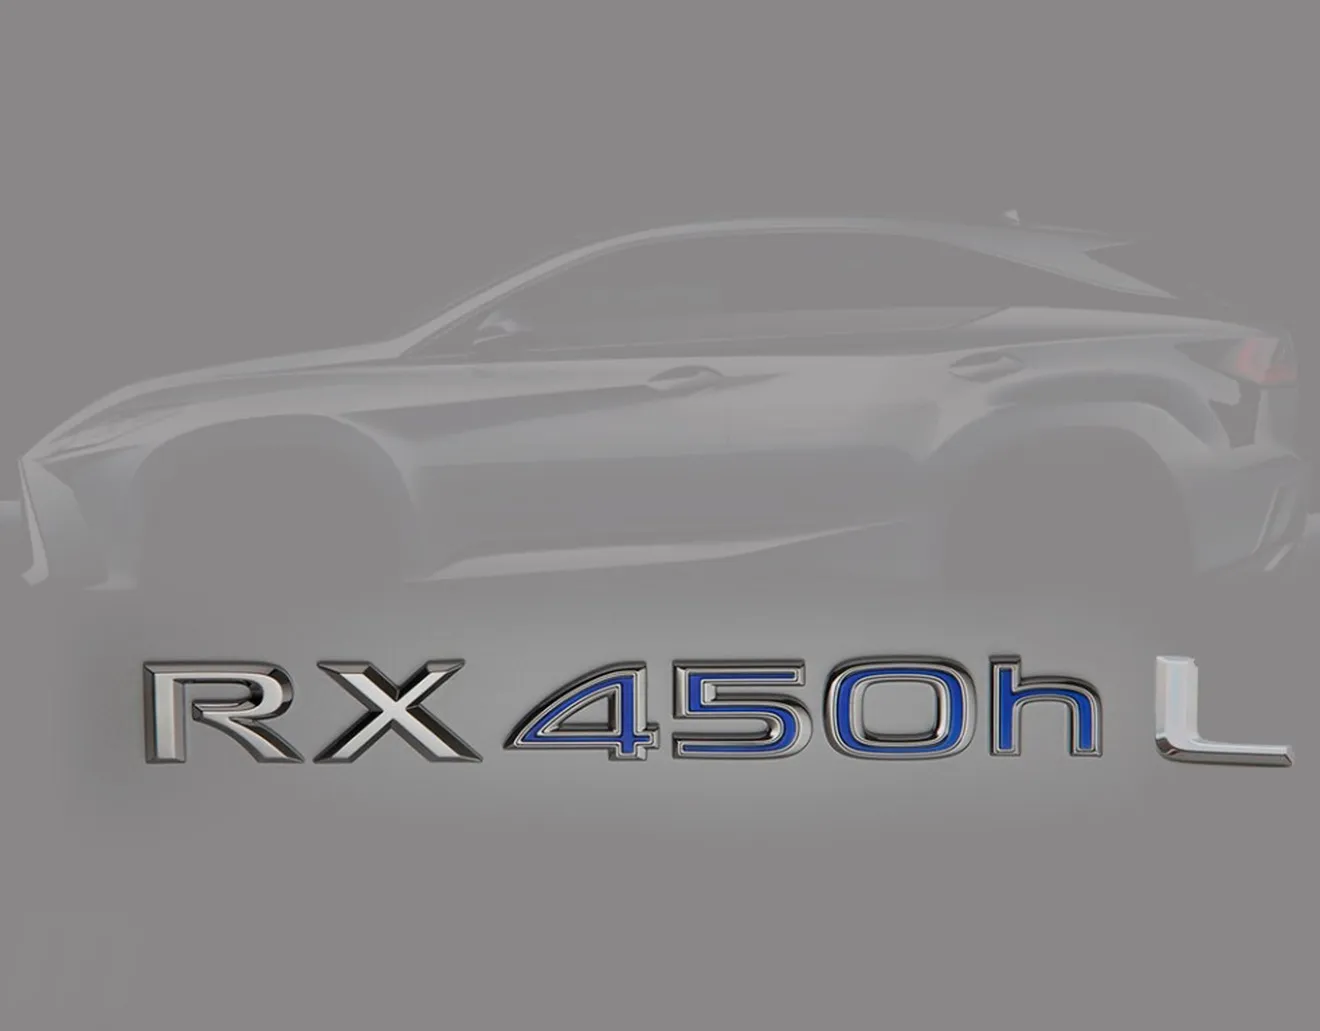 Lexus confirma que habrá un RX de siete plazas